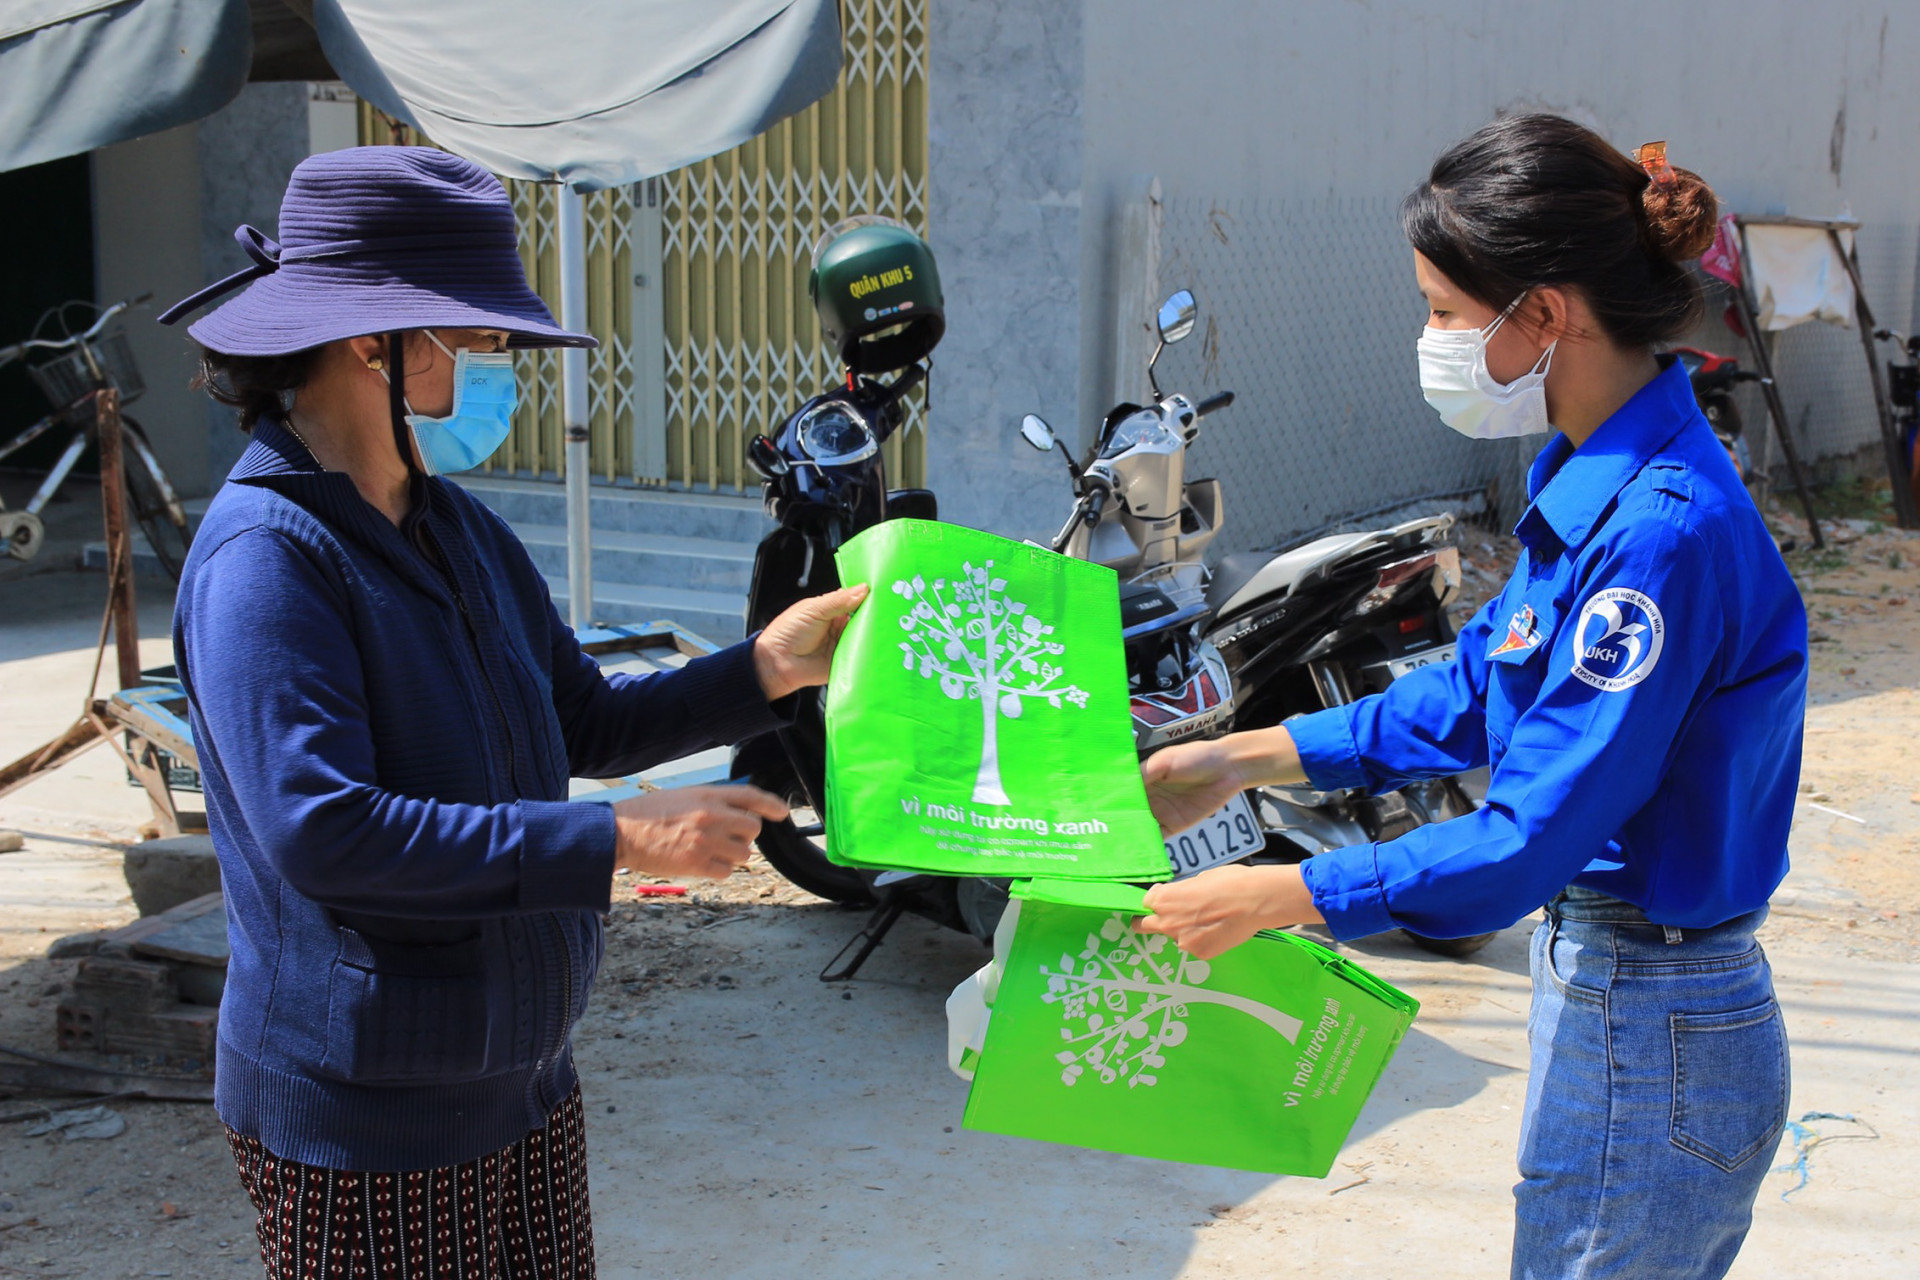 Triển khai mô hình  "Chợ dân sinh nói không với rác thải nhựa " tại chợ dân sinh xã Cam Thành Nam với hoạt động phát túi vải thân thiện với môi trường cho người dân